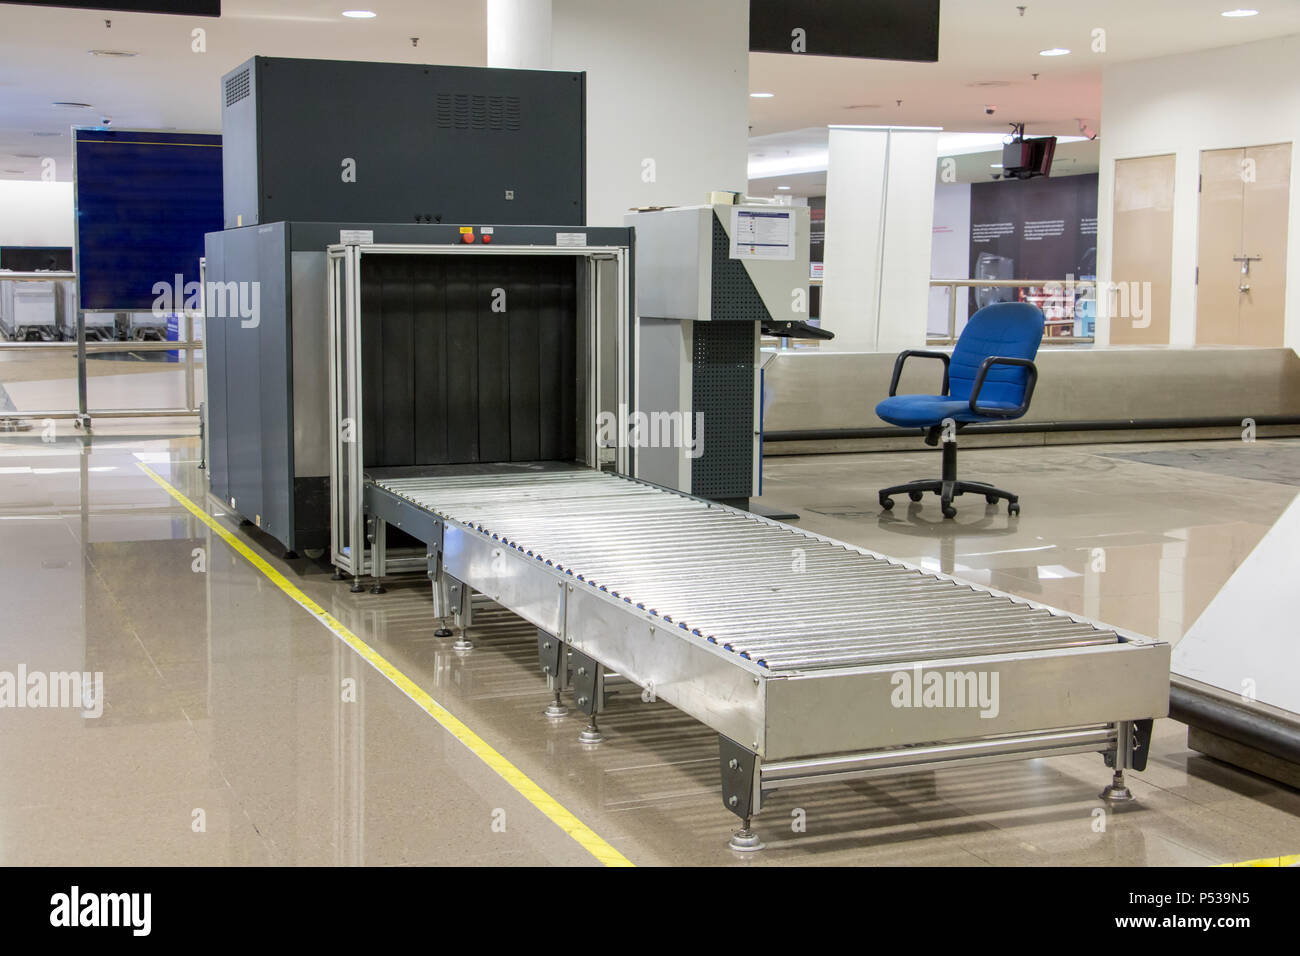 Flughafen Sicherheit Metalldetektor scannen. Leer Scanner control Gepäck im  Terminal. Tor-ray Erkennung mit einem Riemen für das Scannen von Taschen.  Punkt prüfen Stockfotografie - Alamy